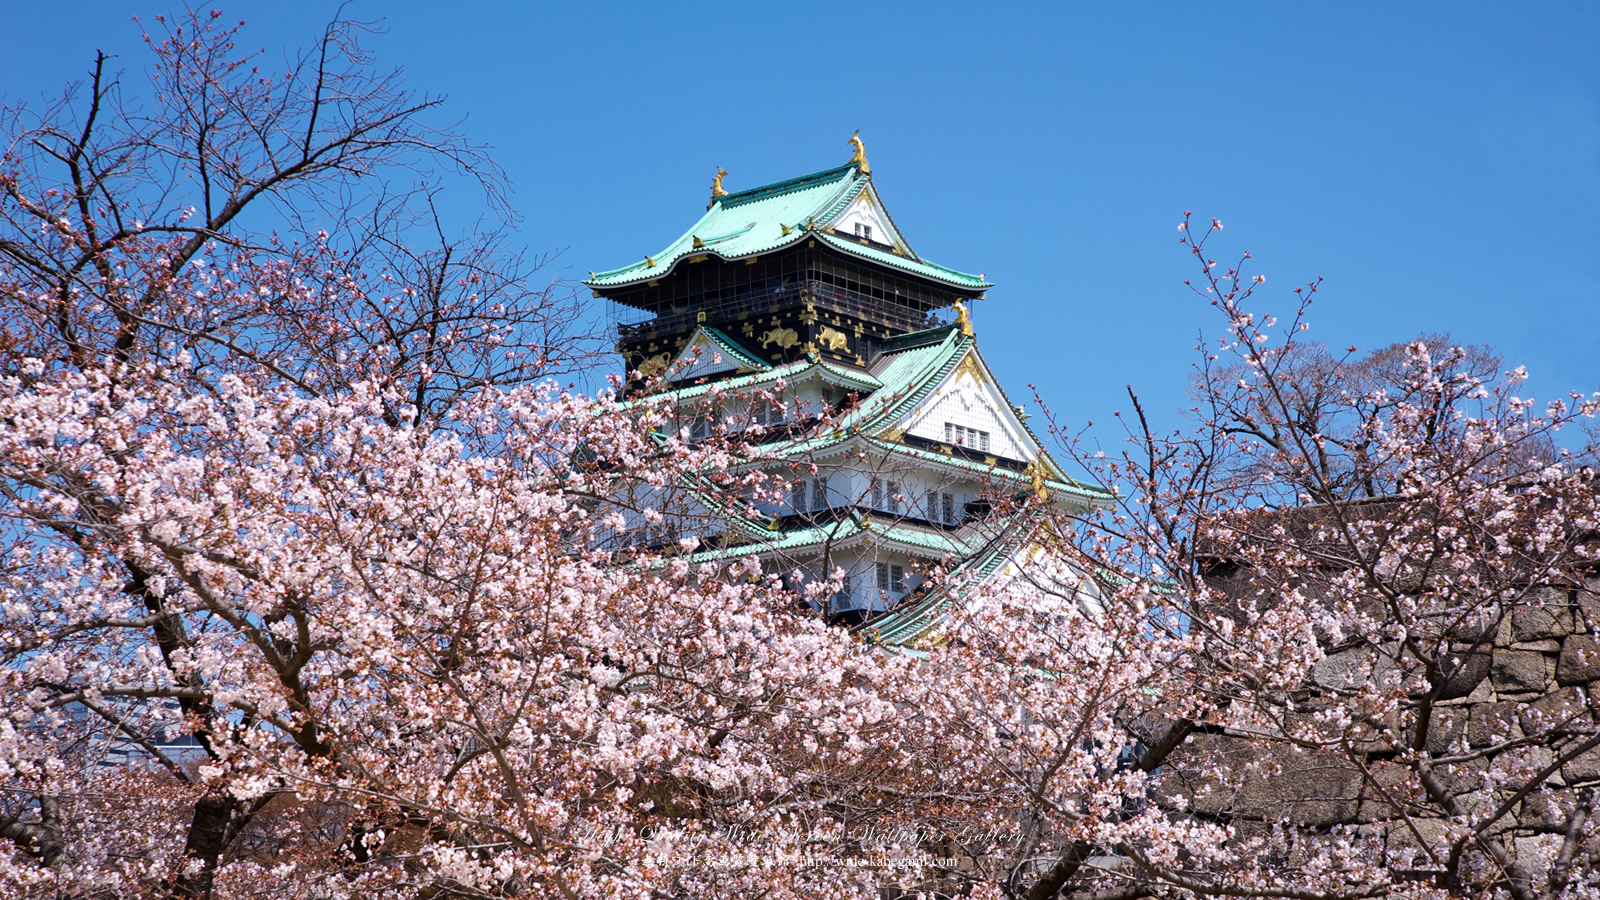 自然風景のワイド壁紙 1600x900 大阪城と桜 4 無料ワイド高画質壁紙館